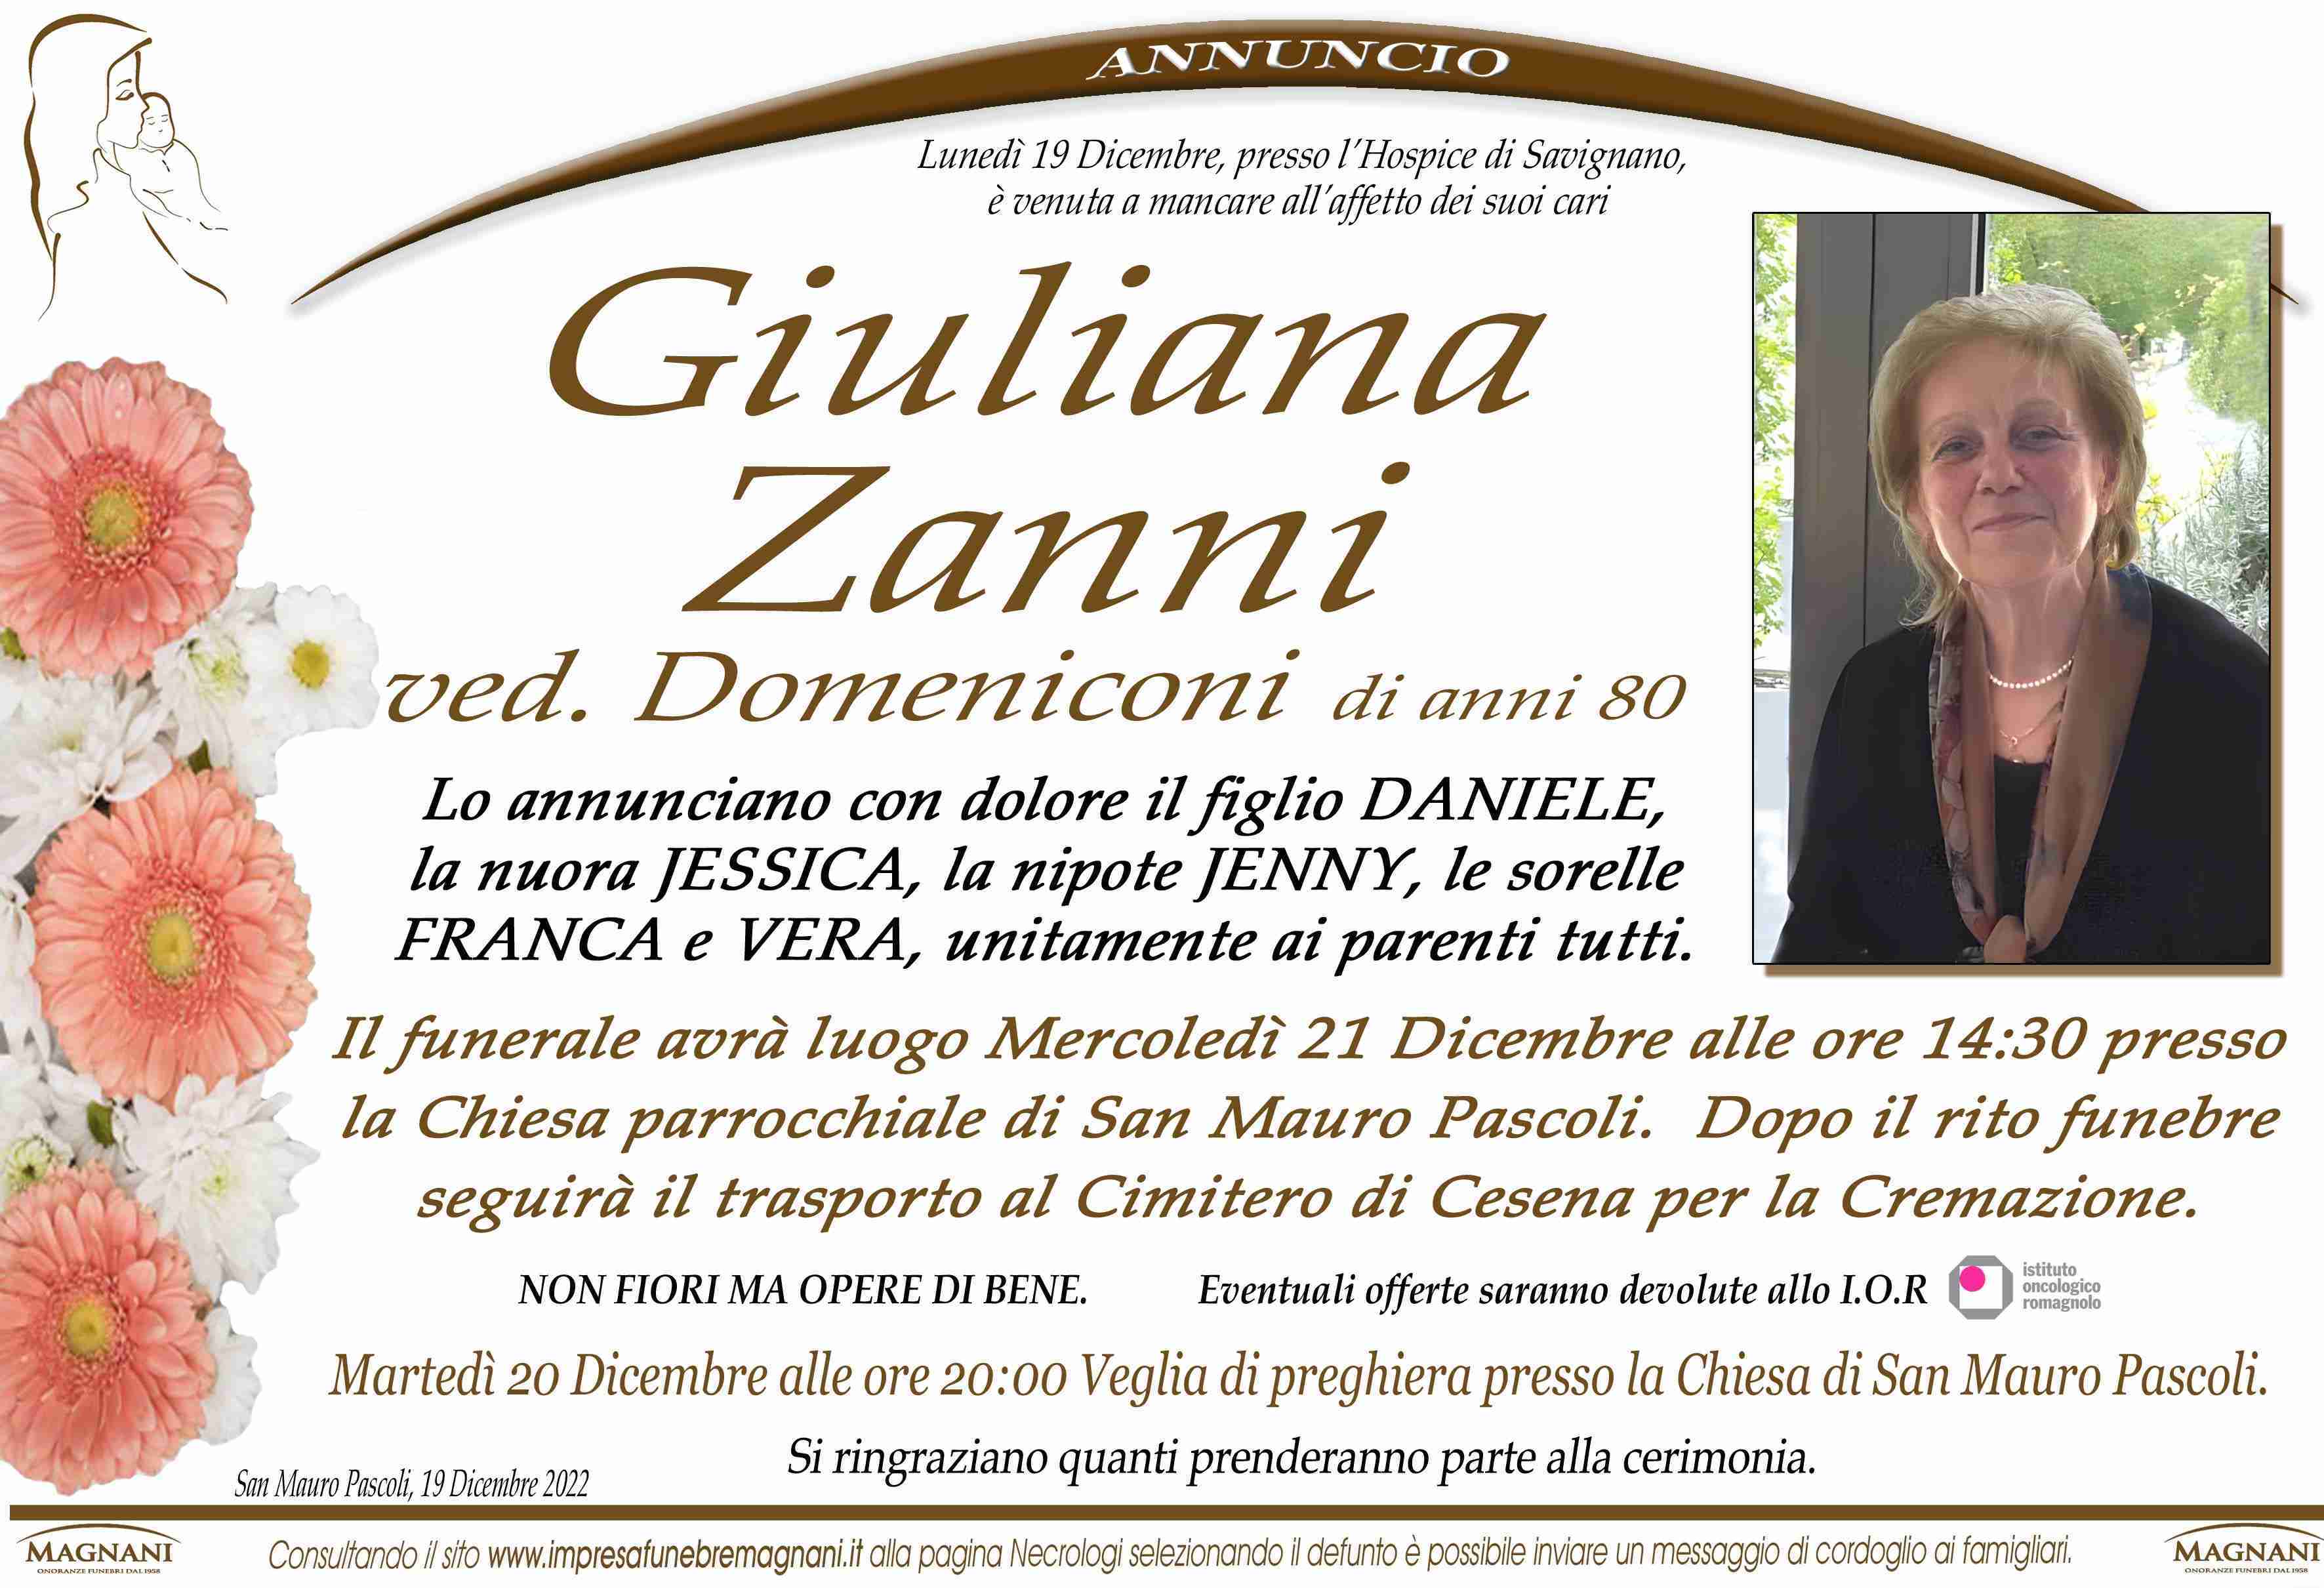 Giuliana Zanni